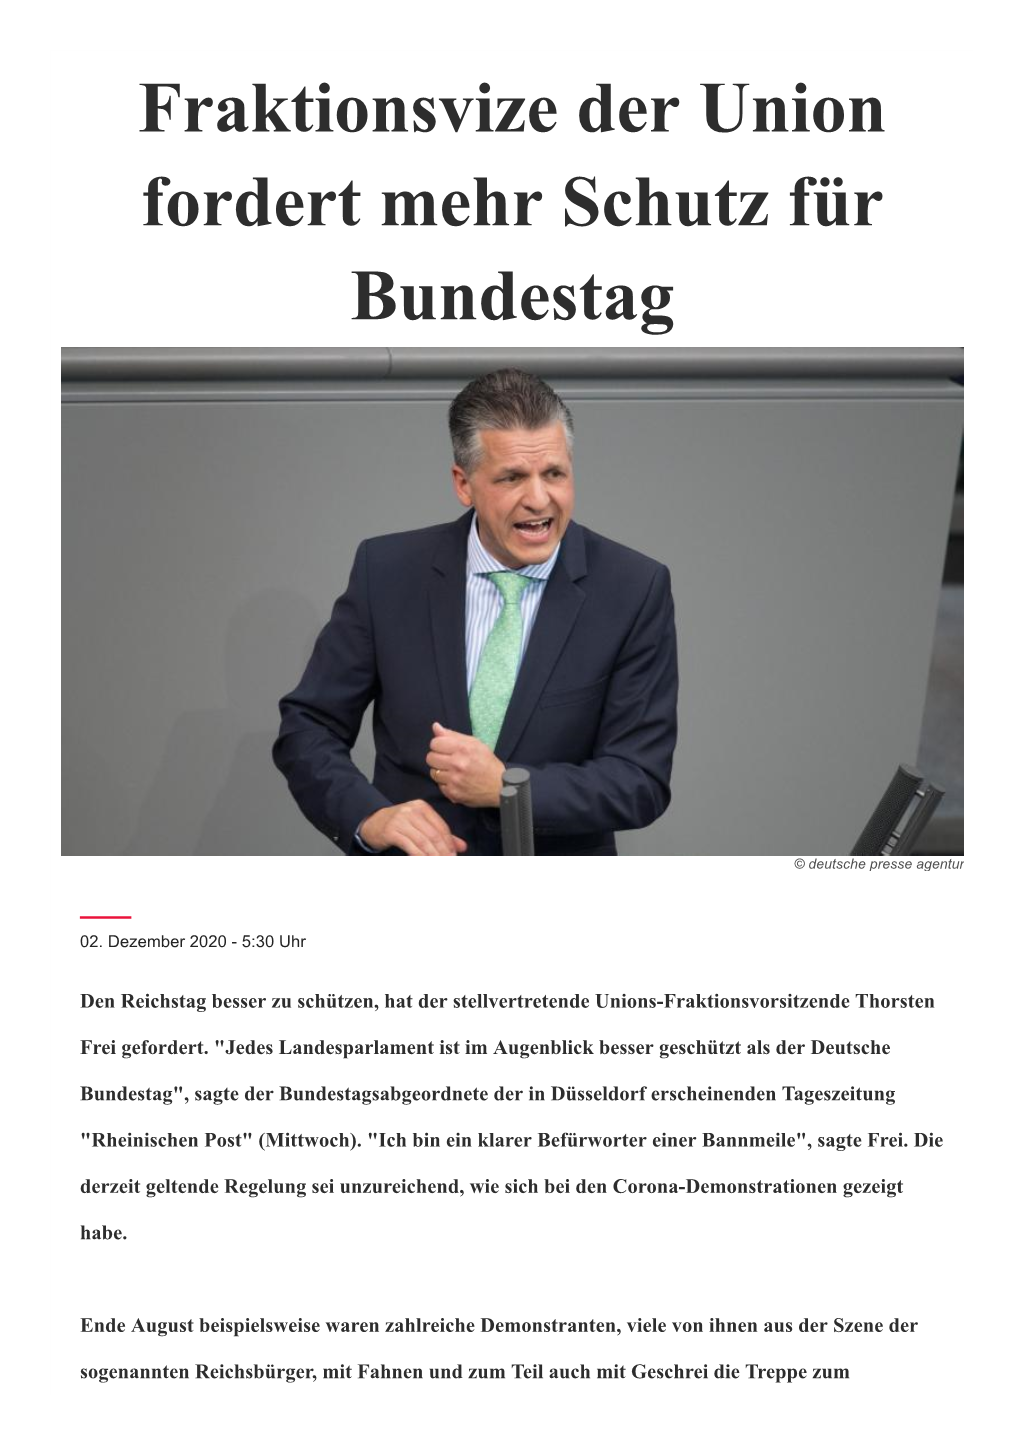 Fraktionsvize Der Union Fordert Mehr Schutz Für Bundestag